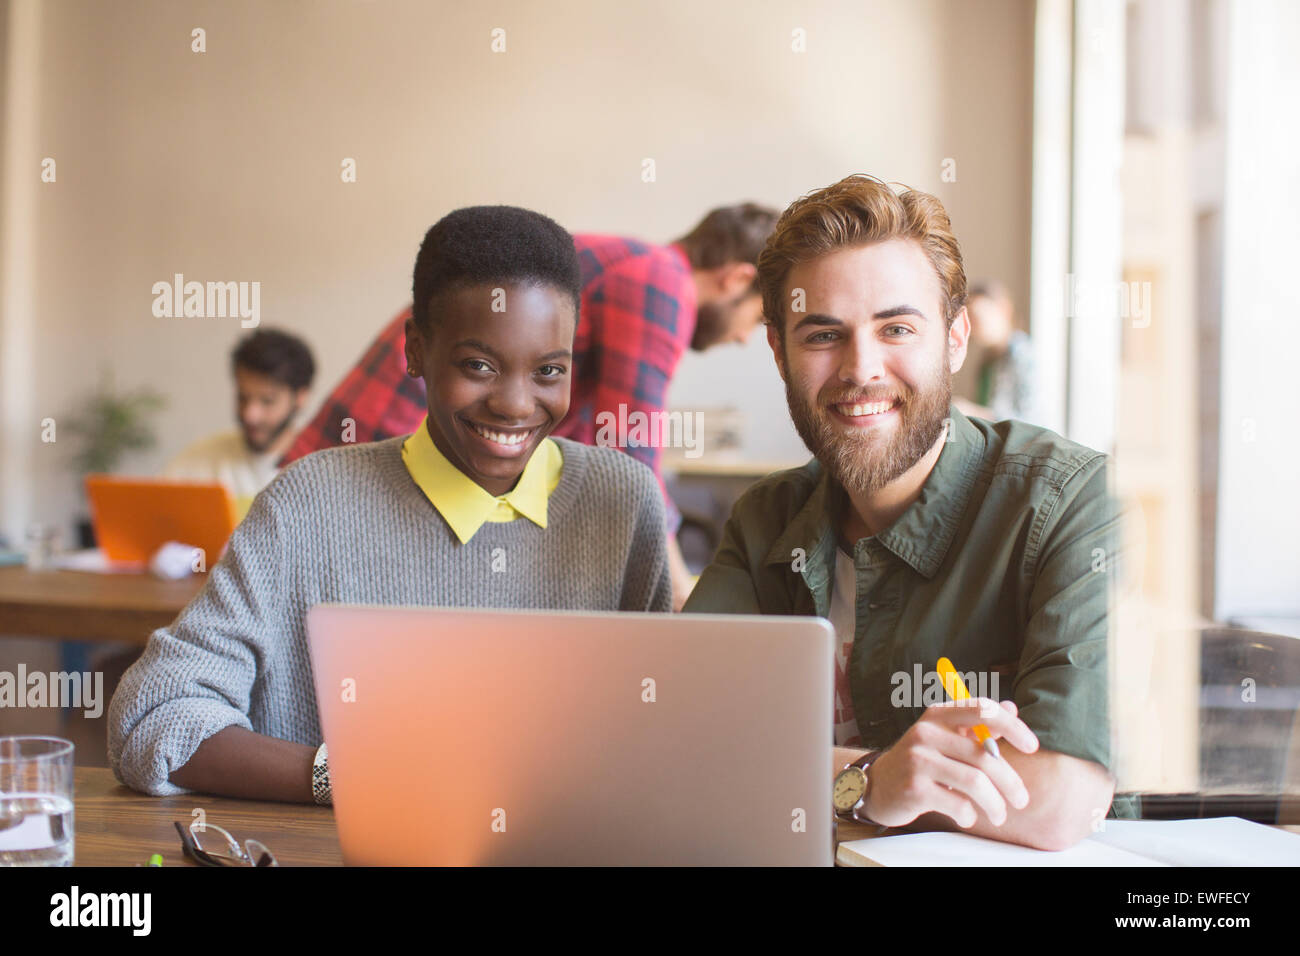 Ritratto aziendale sorridente persone che lavorano al computer portatile in ufficio Foto Stock